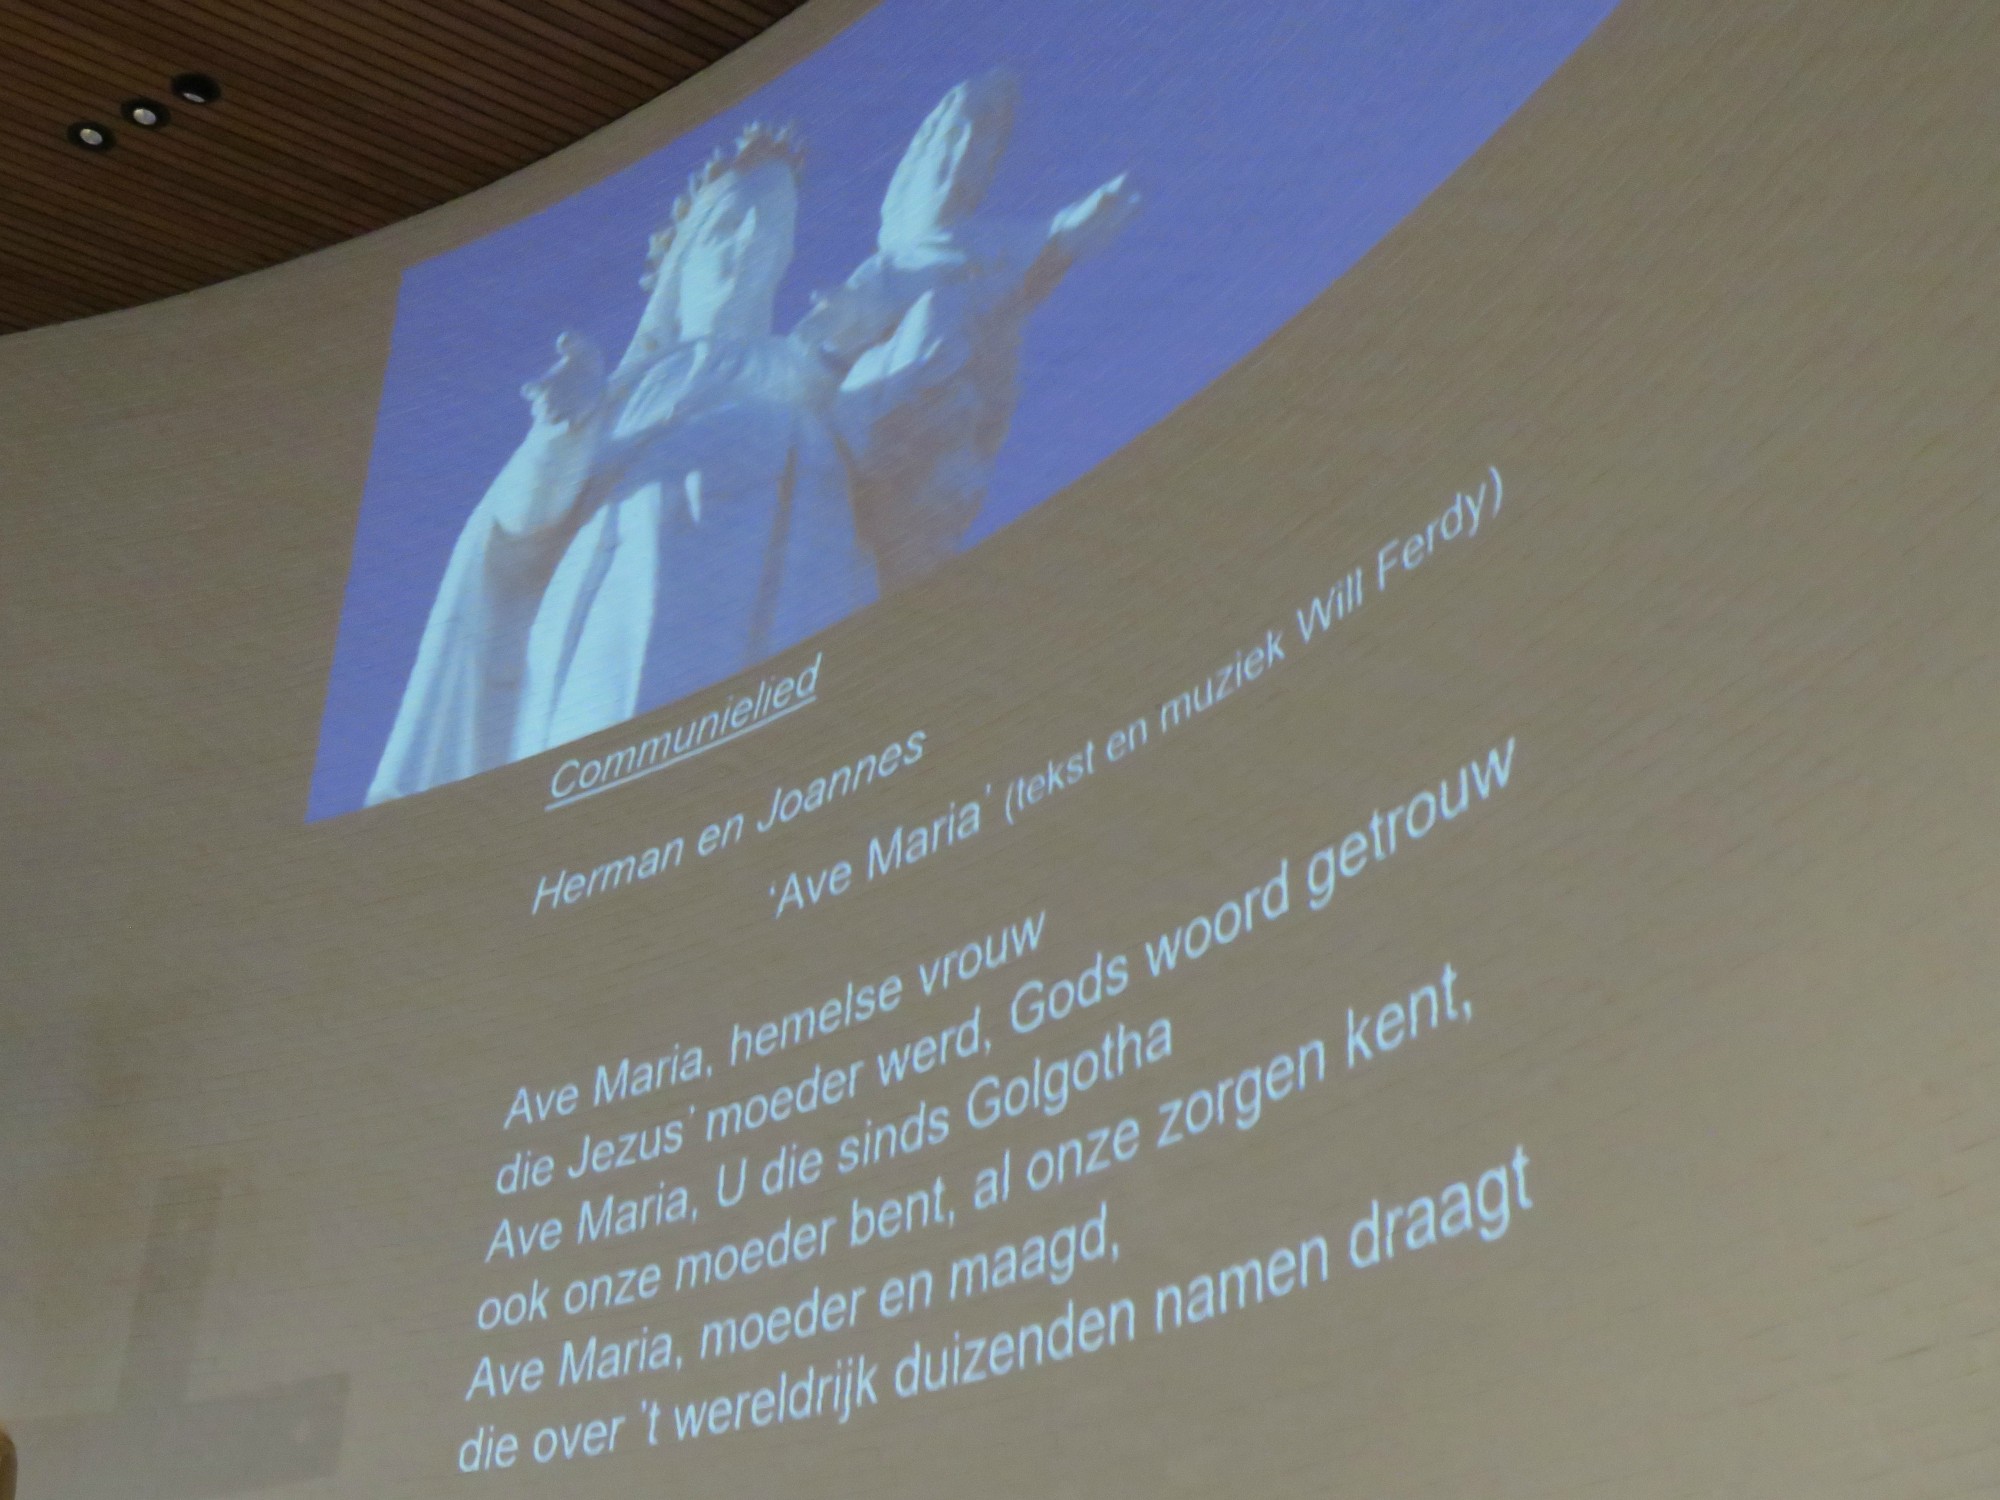 Ave Maria, tekst en muziek door Will Ferdy, uitgevoerd door Herman Augustyns en Joannes Thuy aan het orgel